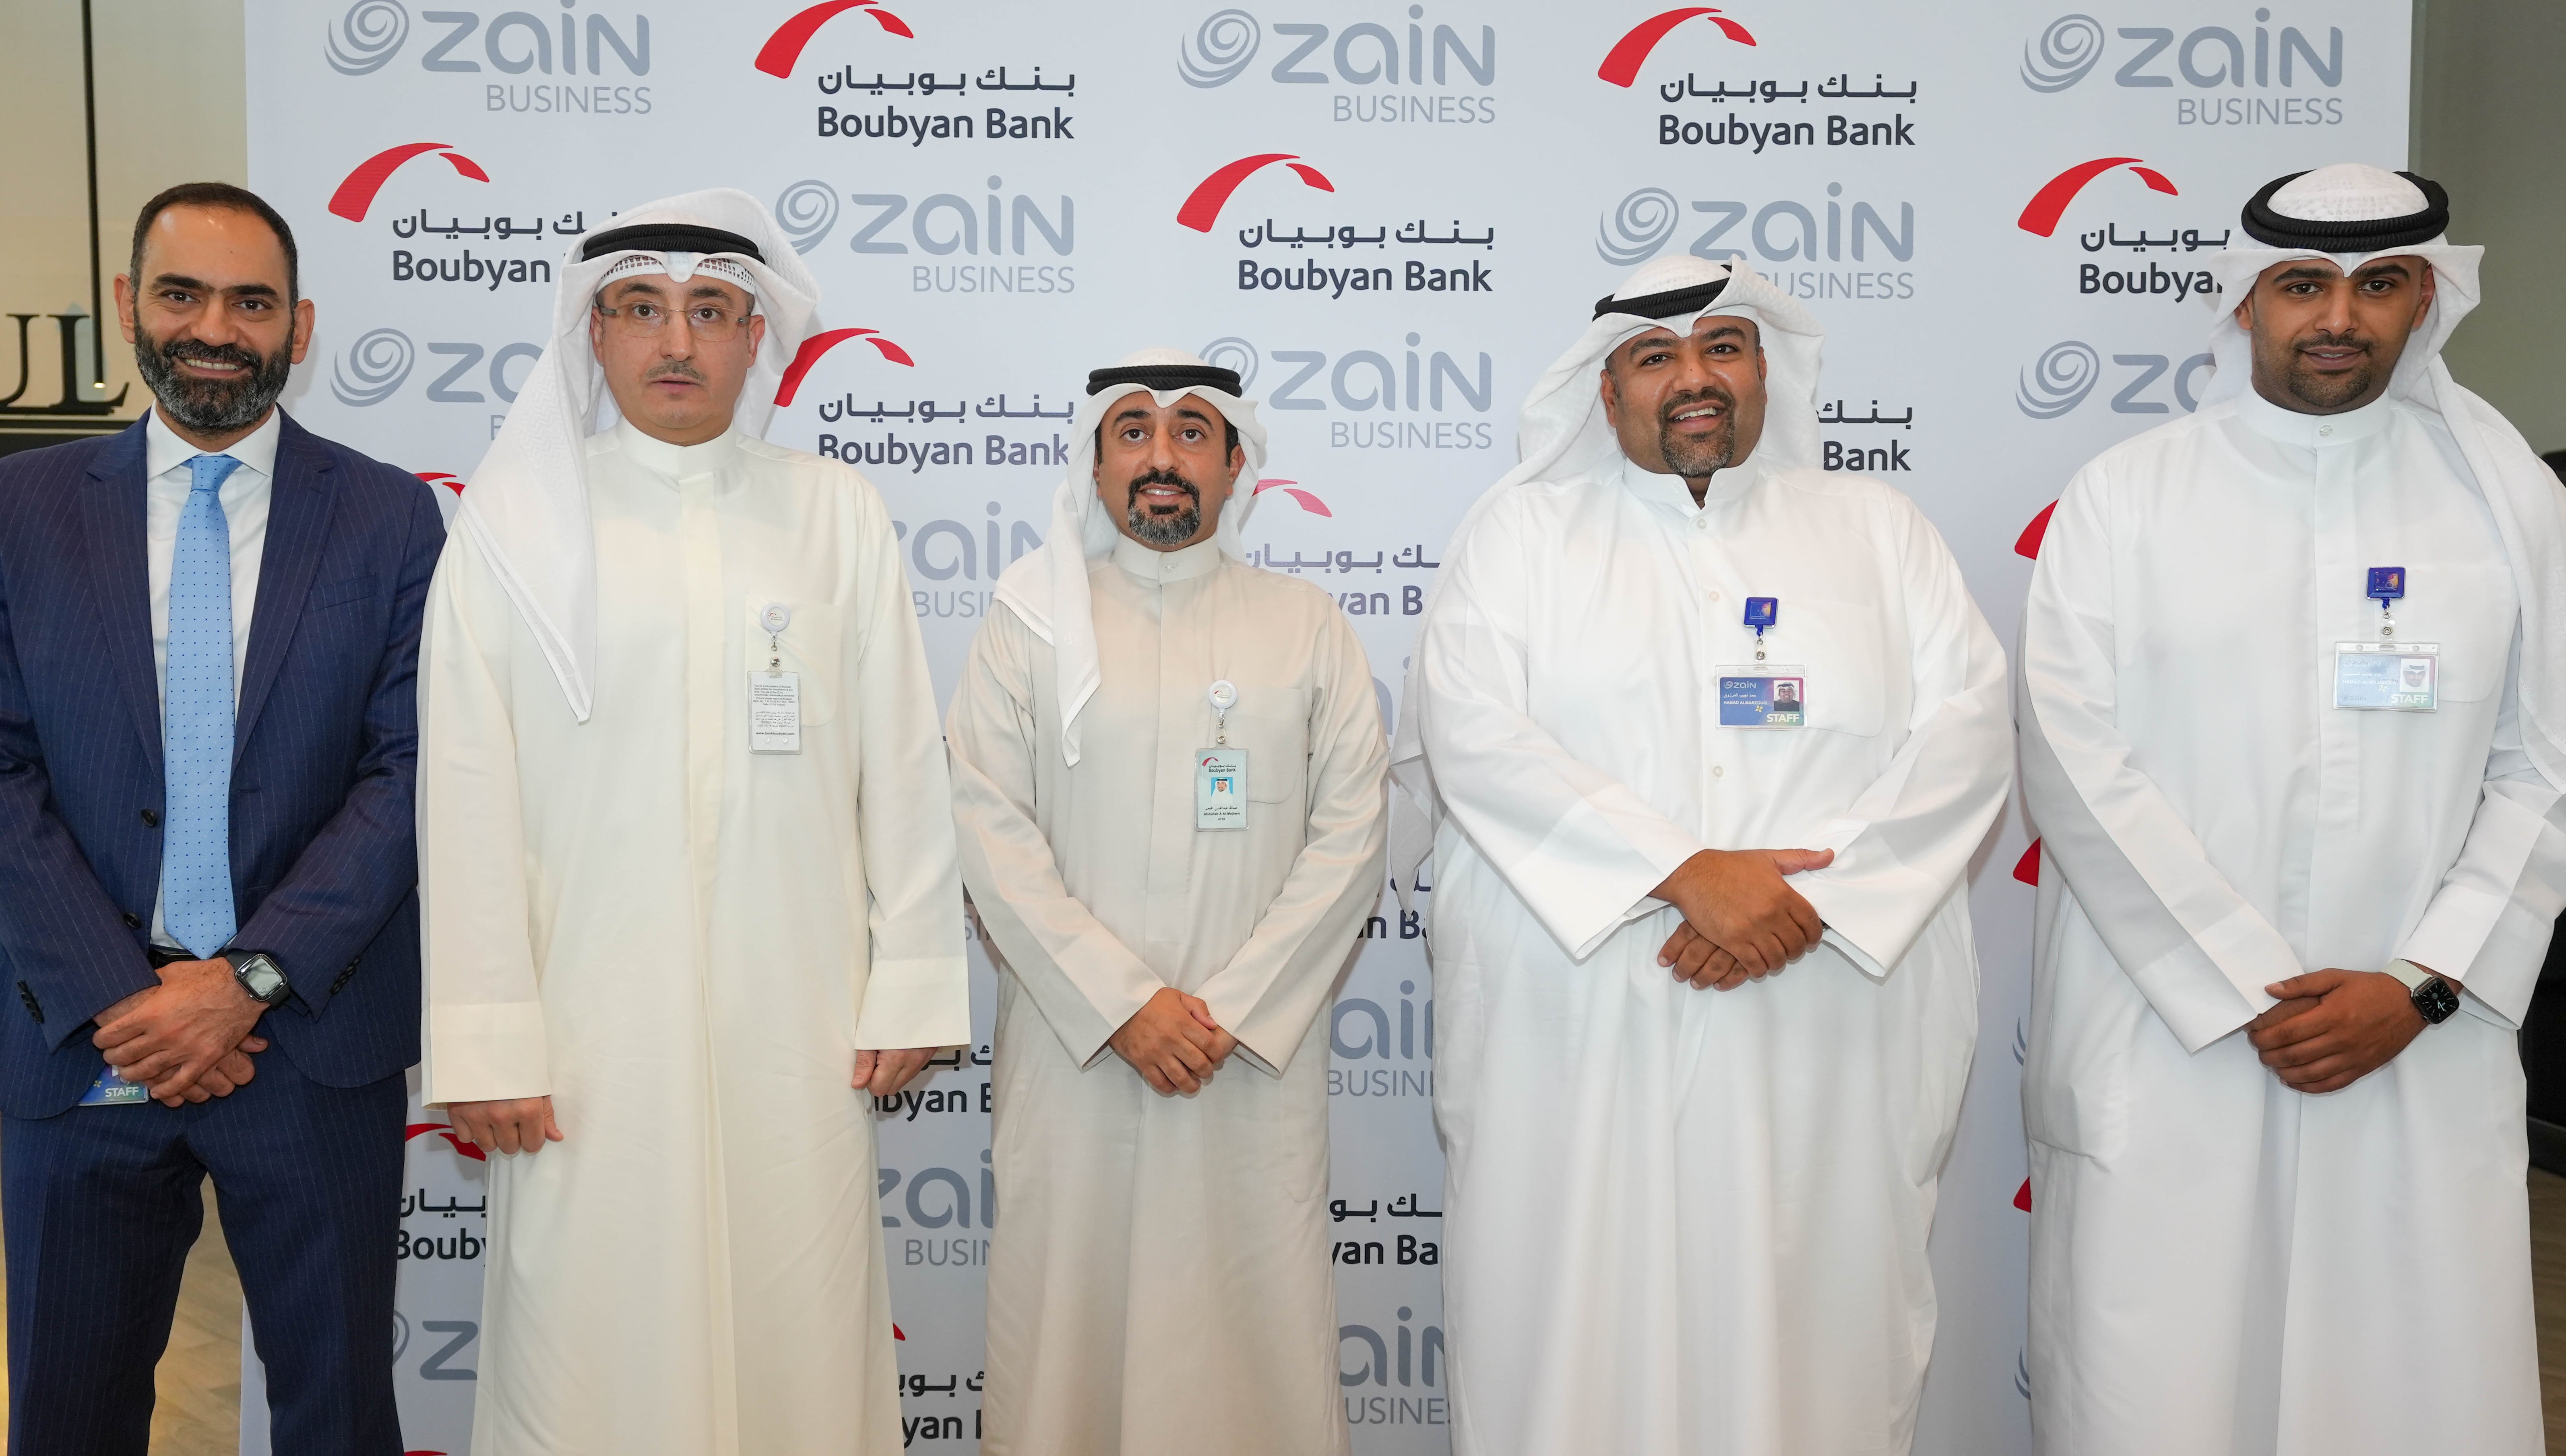 Zain signs MoU with Boubyan Bank